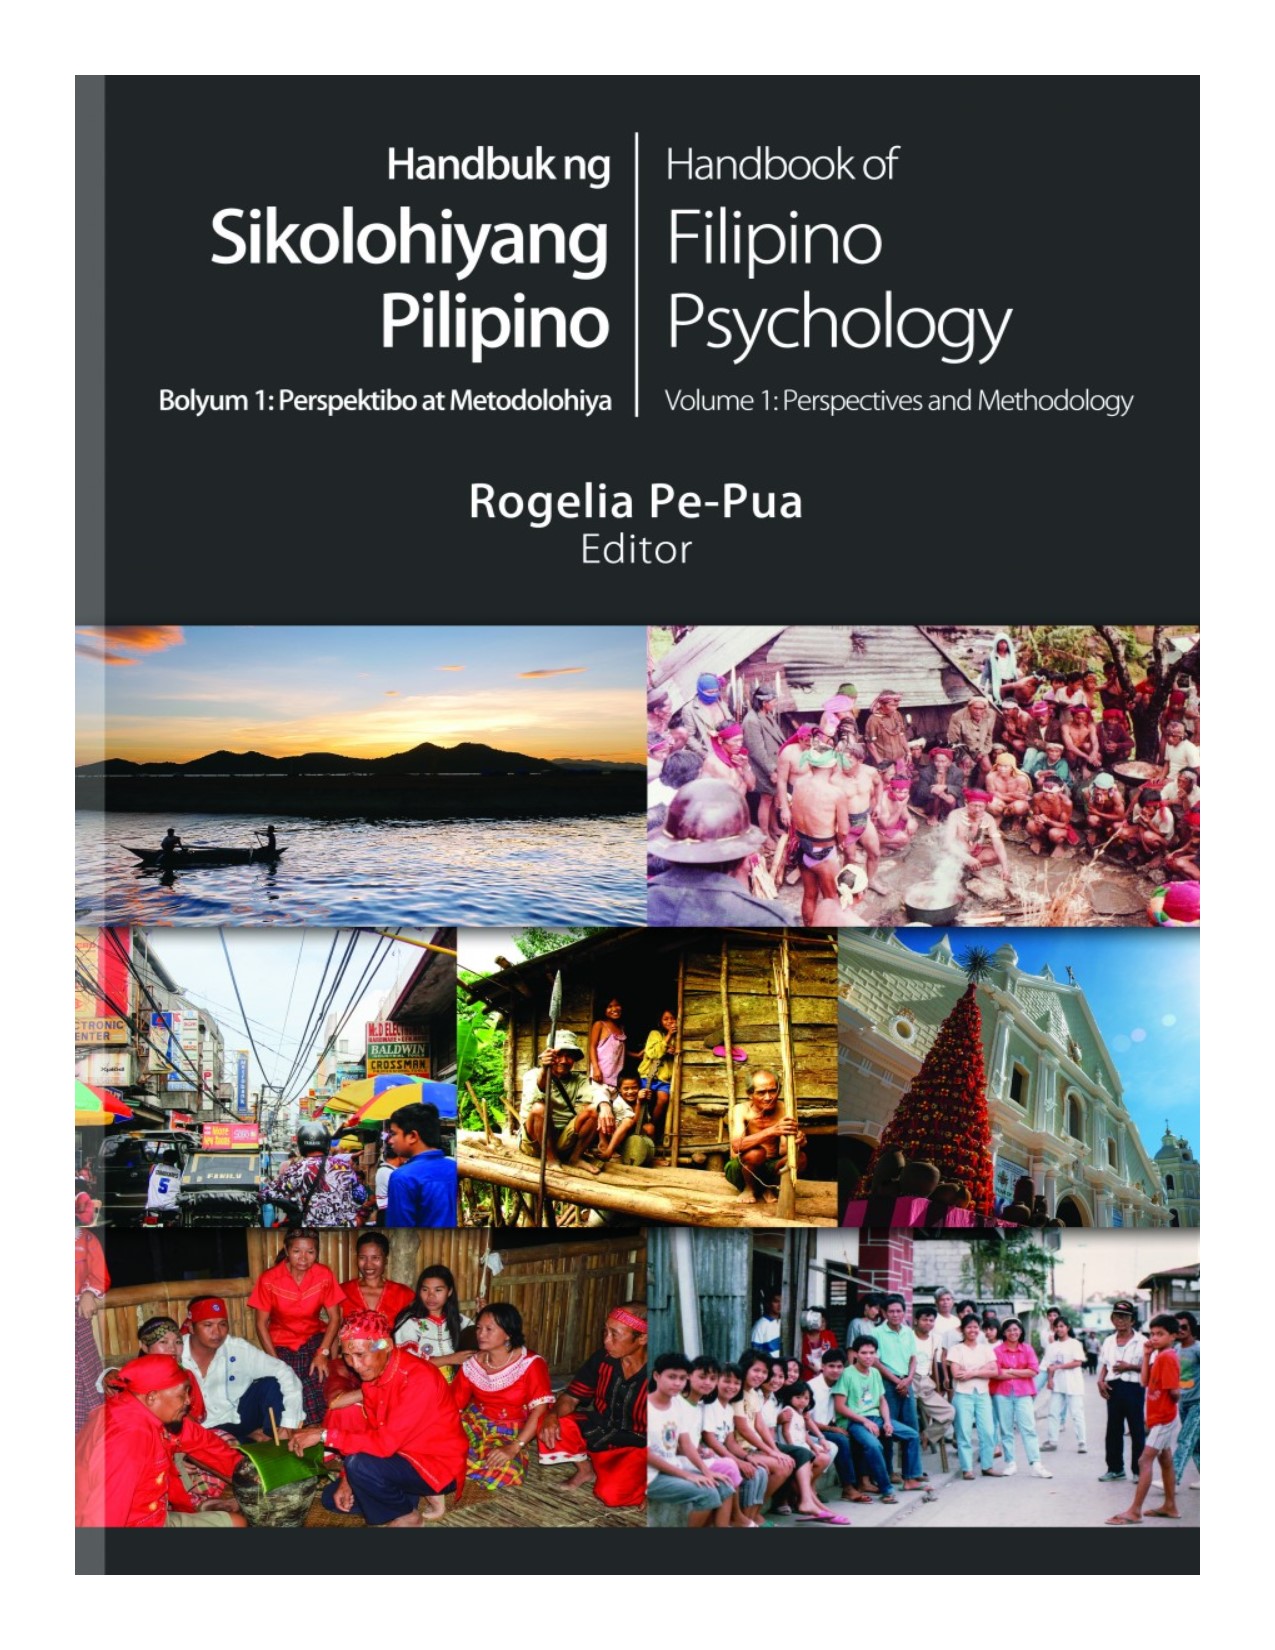 Handbuk ng sikolohiyang Pilipino, bolyum 1 : perspektibo at metodolohiya=Handbook of Filipino psychology, vol.1 perspectives and methodology